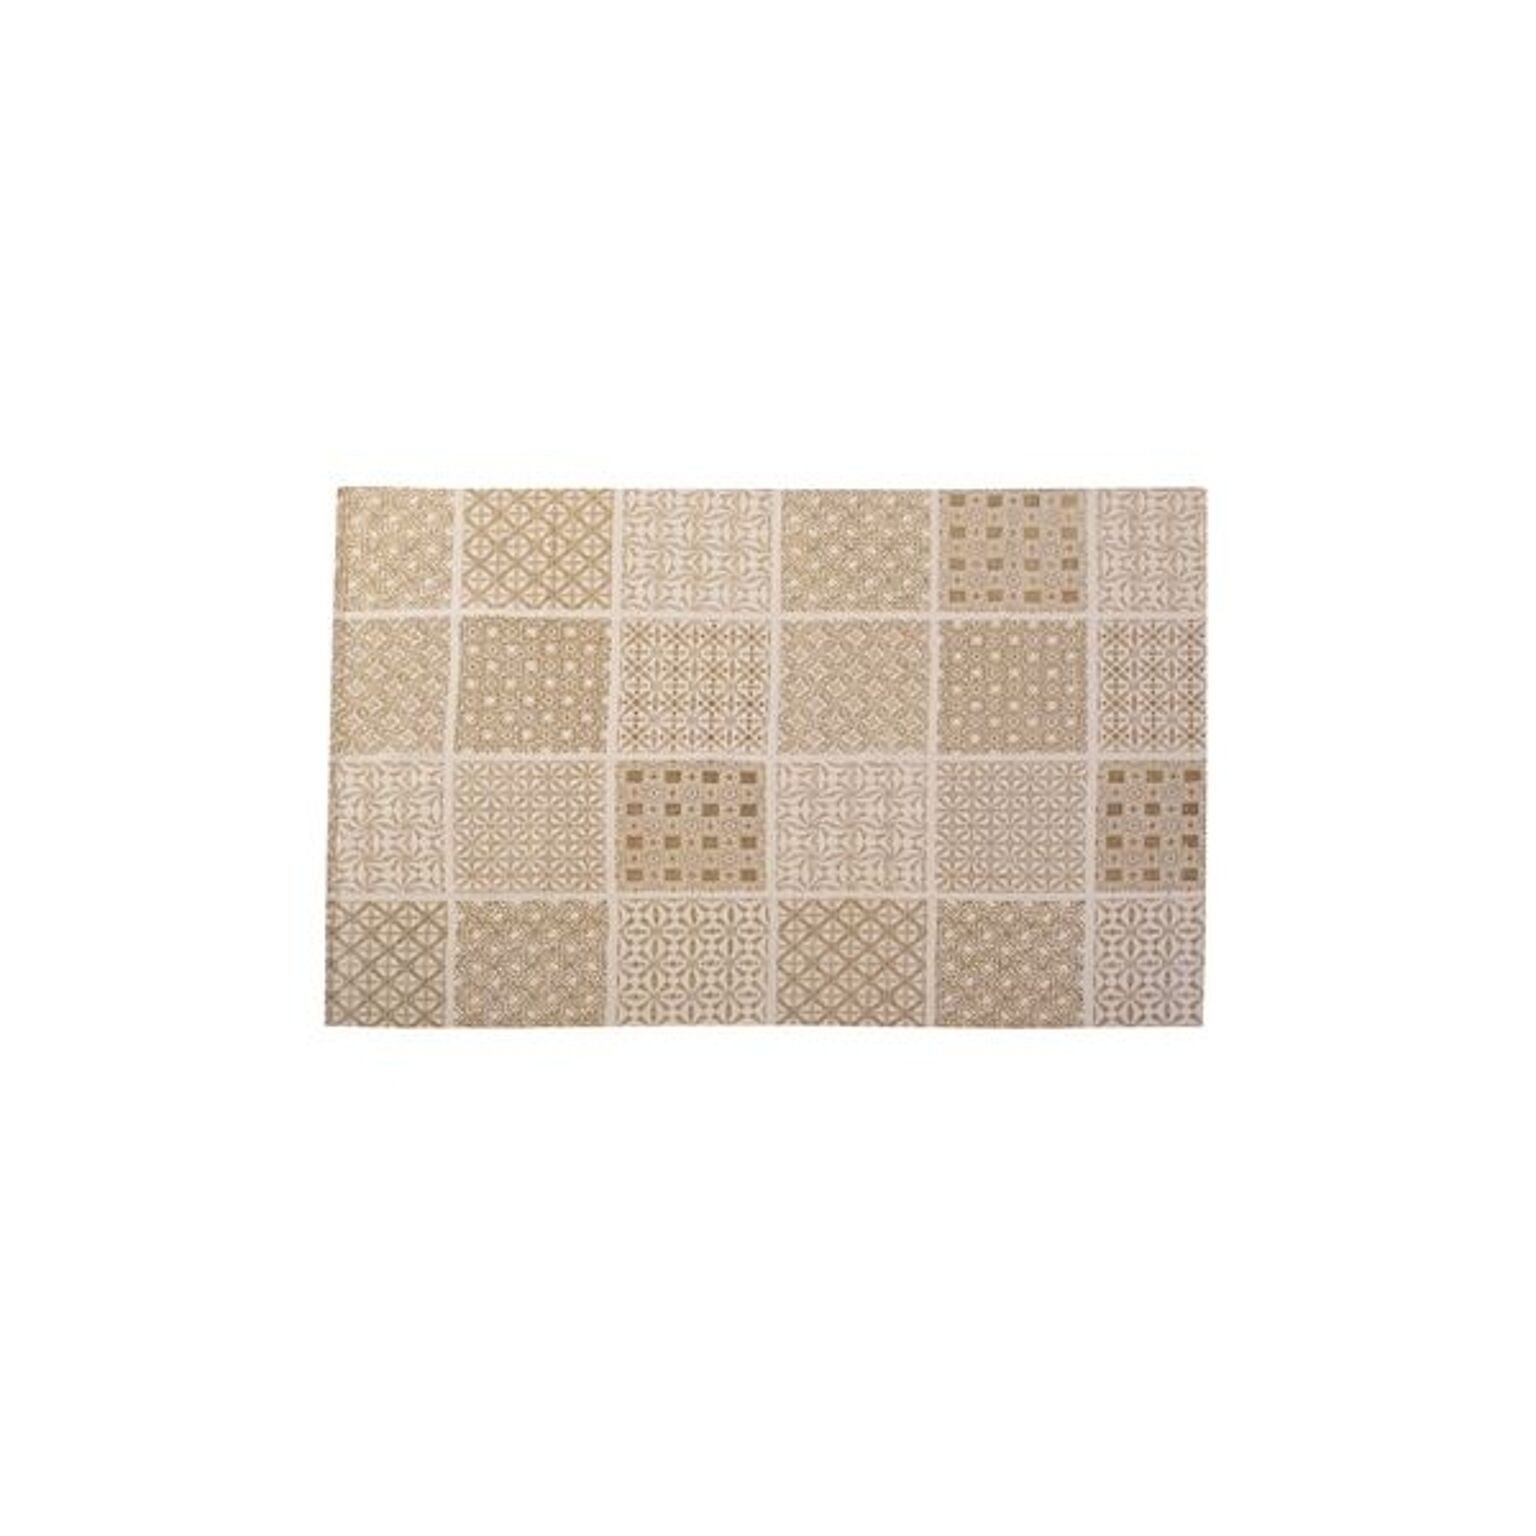 ラグマット 絨毯 130×190cm ベージュ TTR-146BE 長方形 インド製 コットン 綿 リビング ダイニング ベッドルーム 寝室 居間